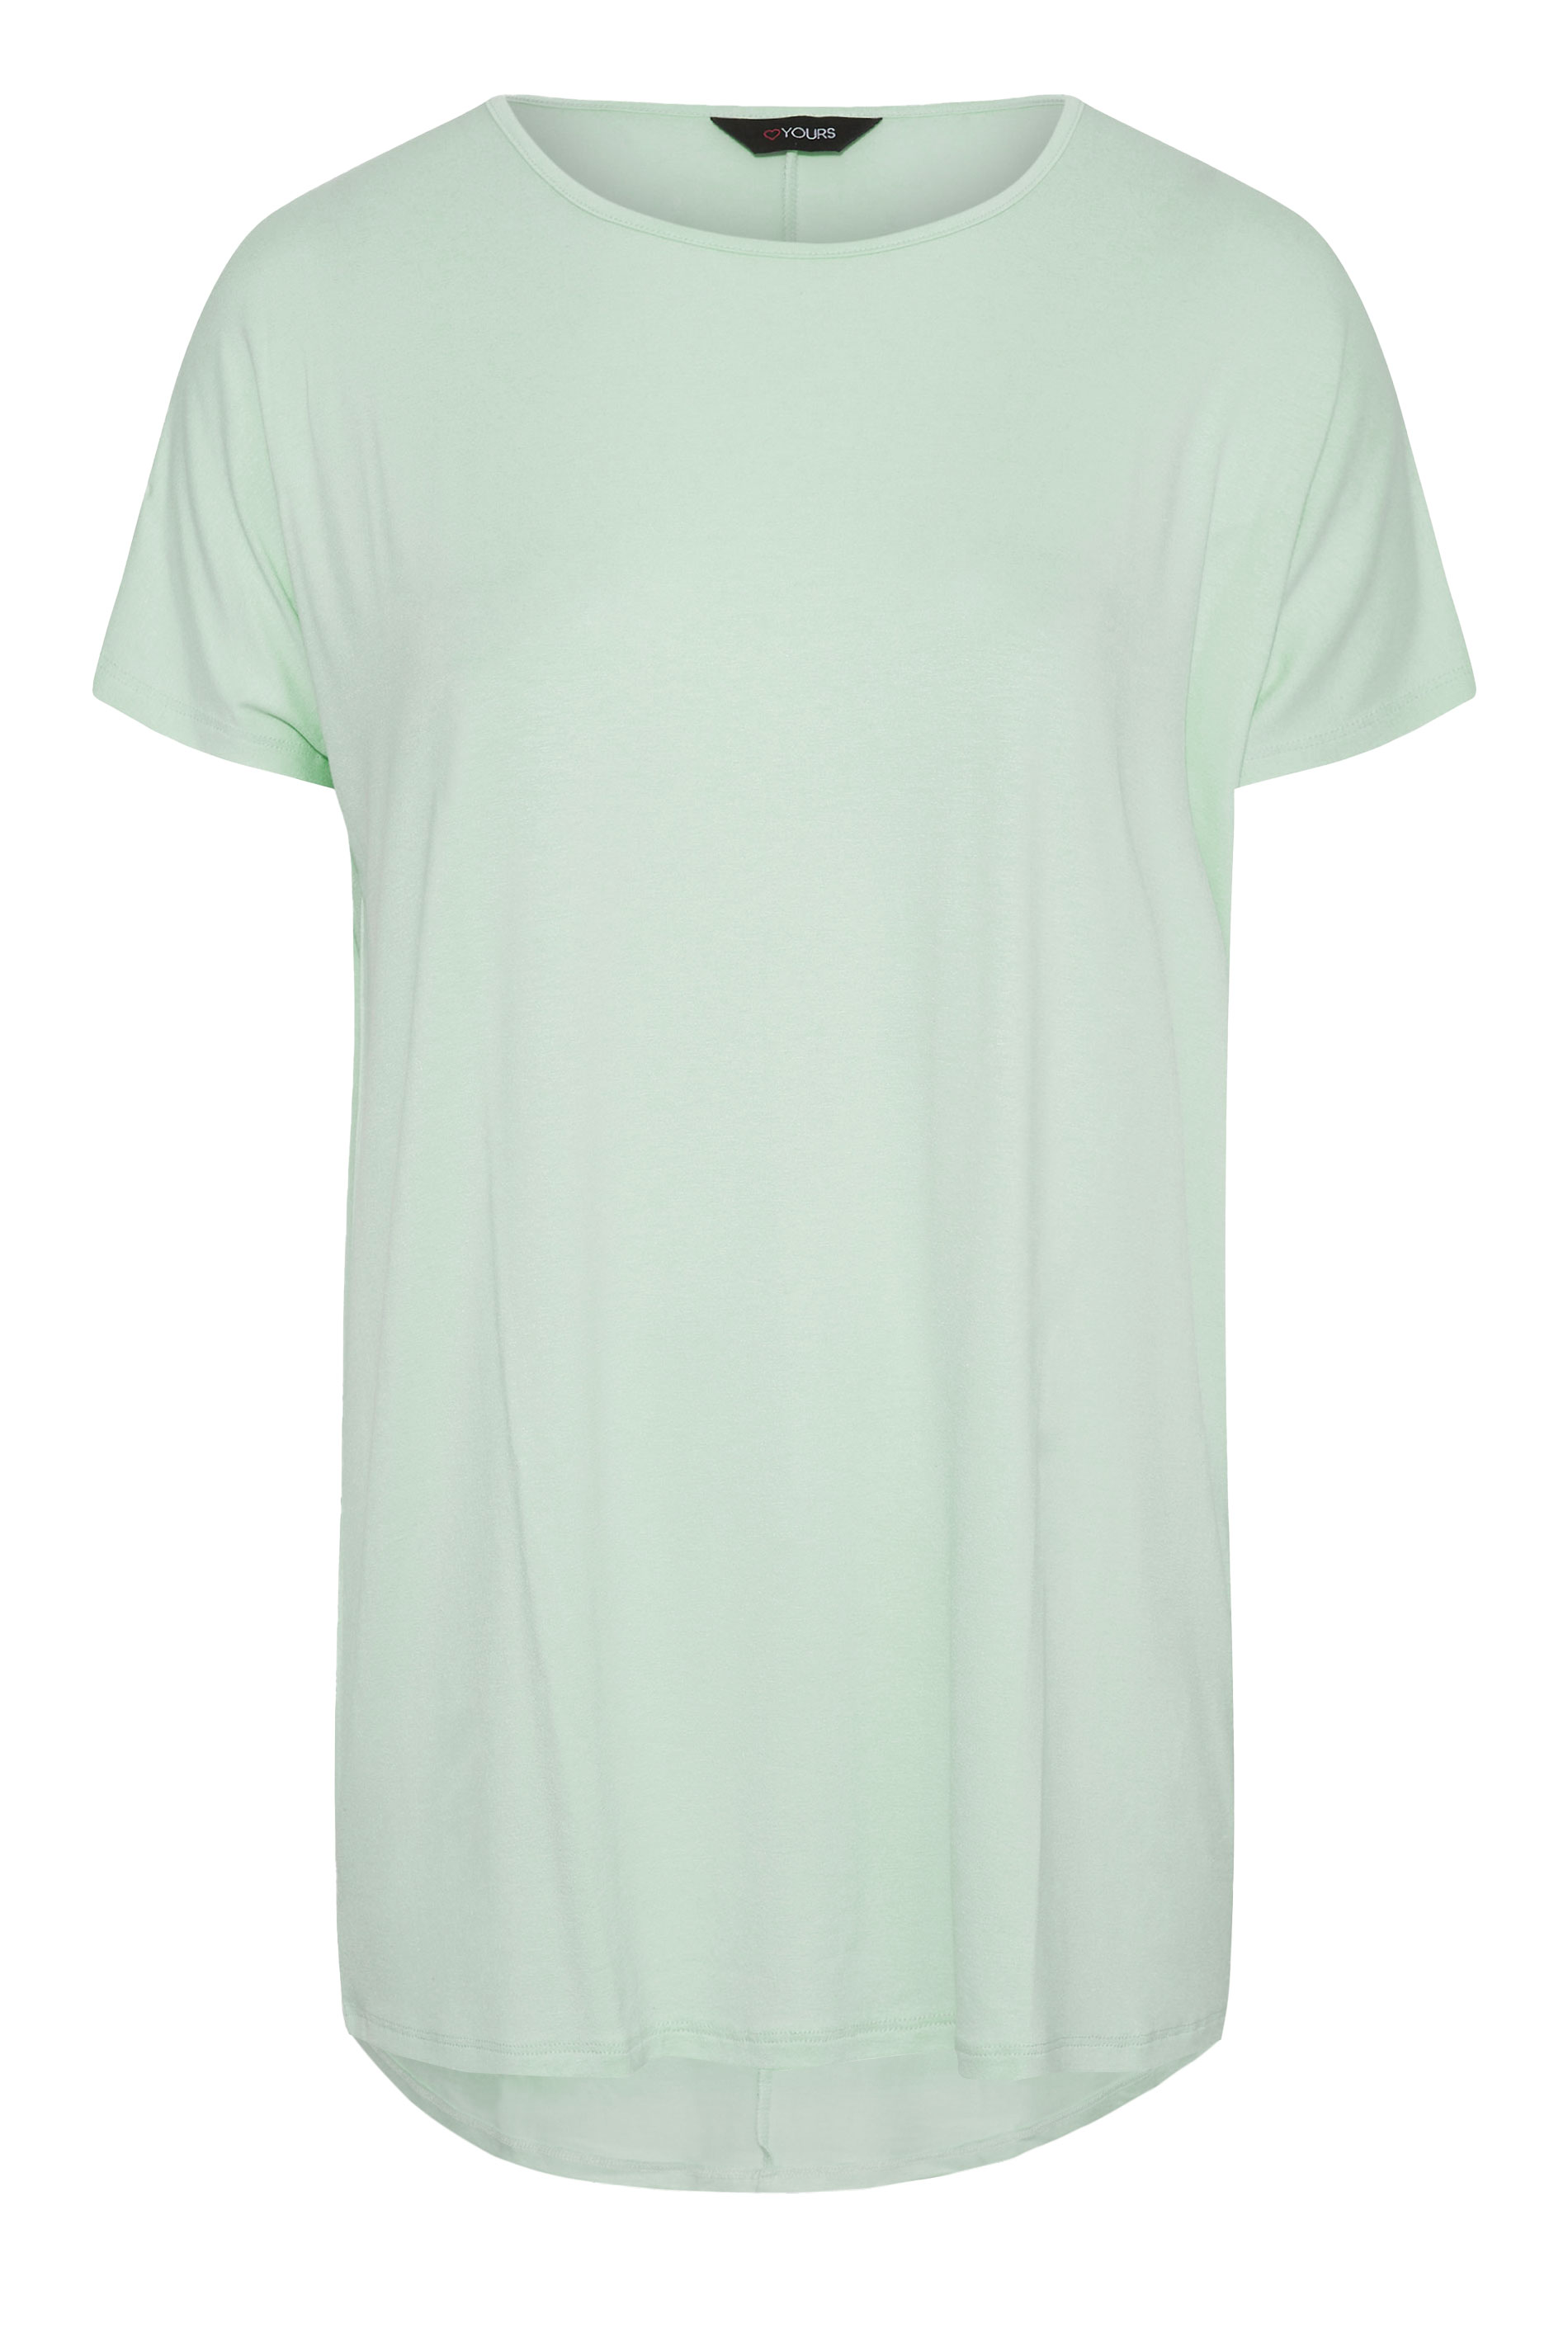 Grande taille  Tops Grande taille  T-Shirts Basiques & Débardeurs | T-Shirt Vert Menthe Manches Courtes - WG14152